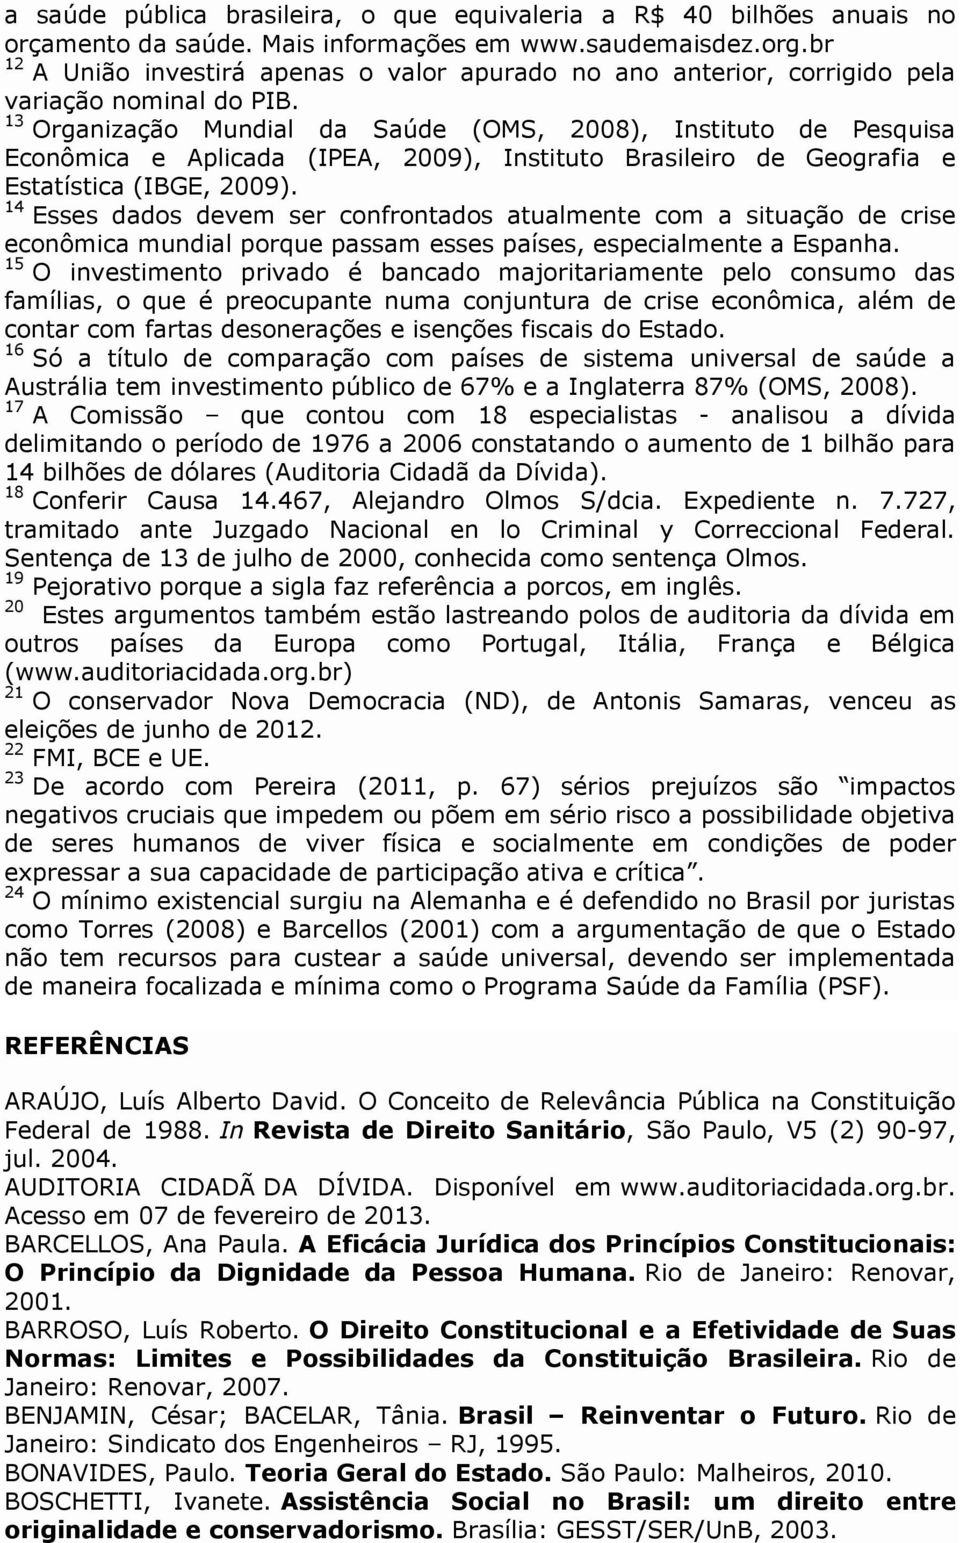 13 Organização Mundial da Saúde (OMS, 2008), Instituto de Pesquisa Econômica e Aplicada (IPEA, 2009), Instituto Brasileiro de Geografia e Estatística (IBGE, 2009).